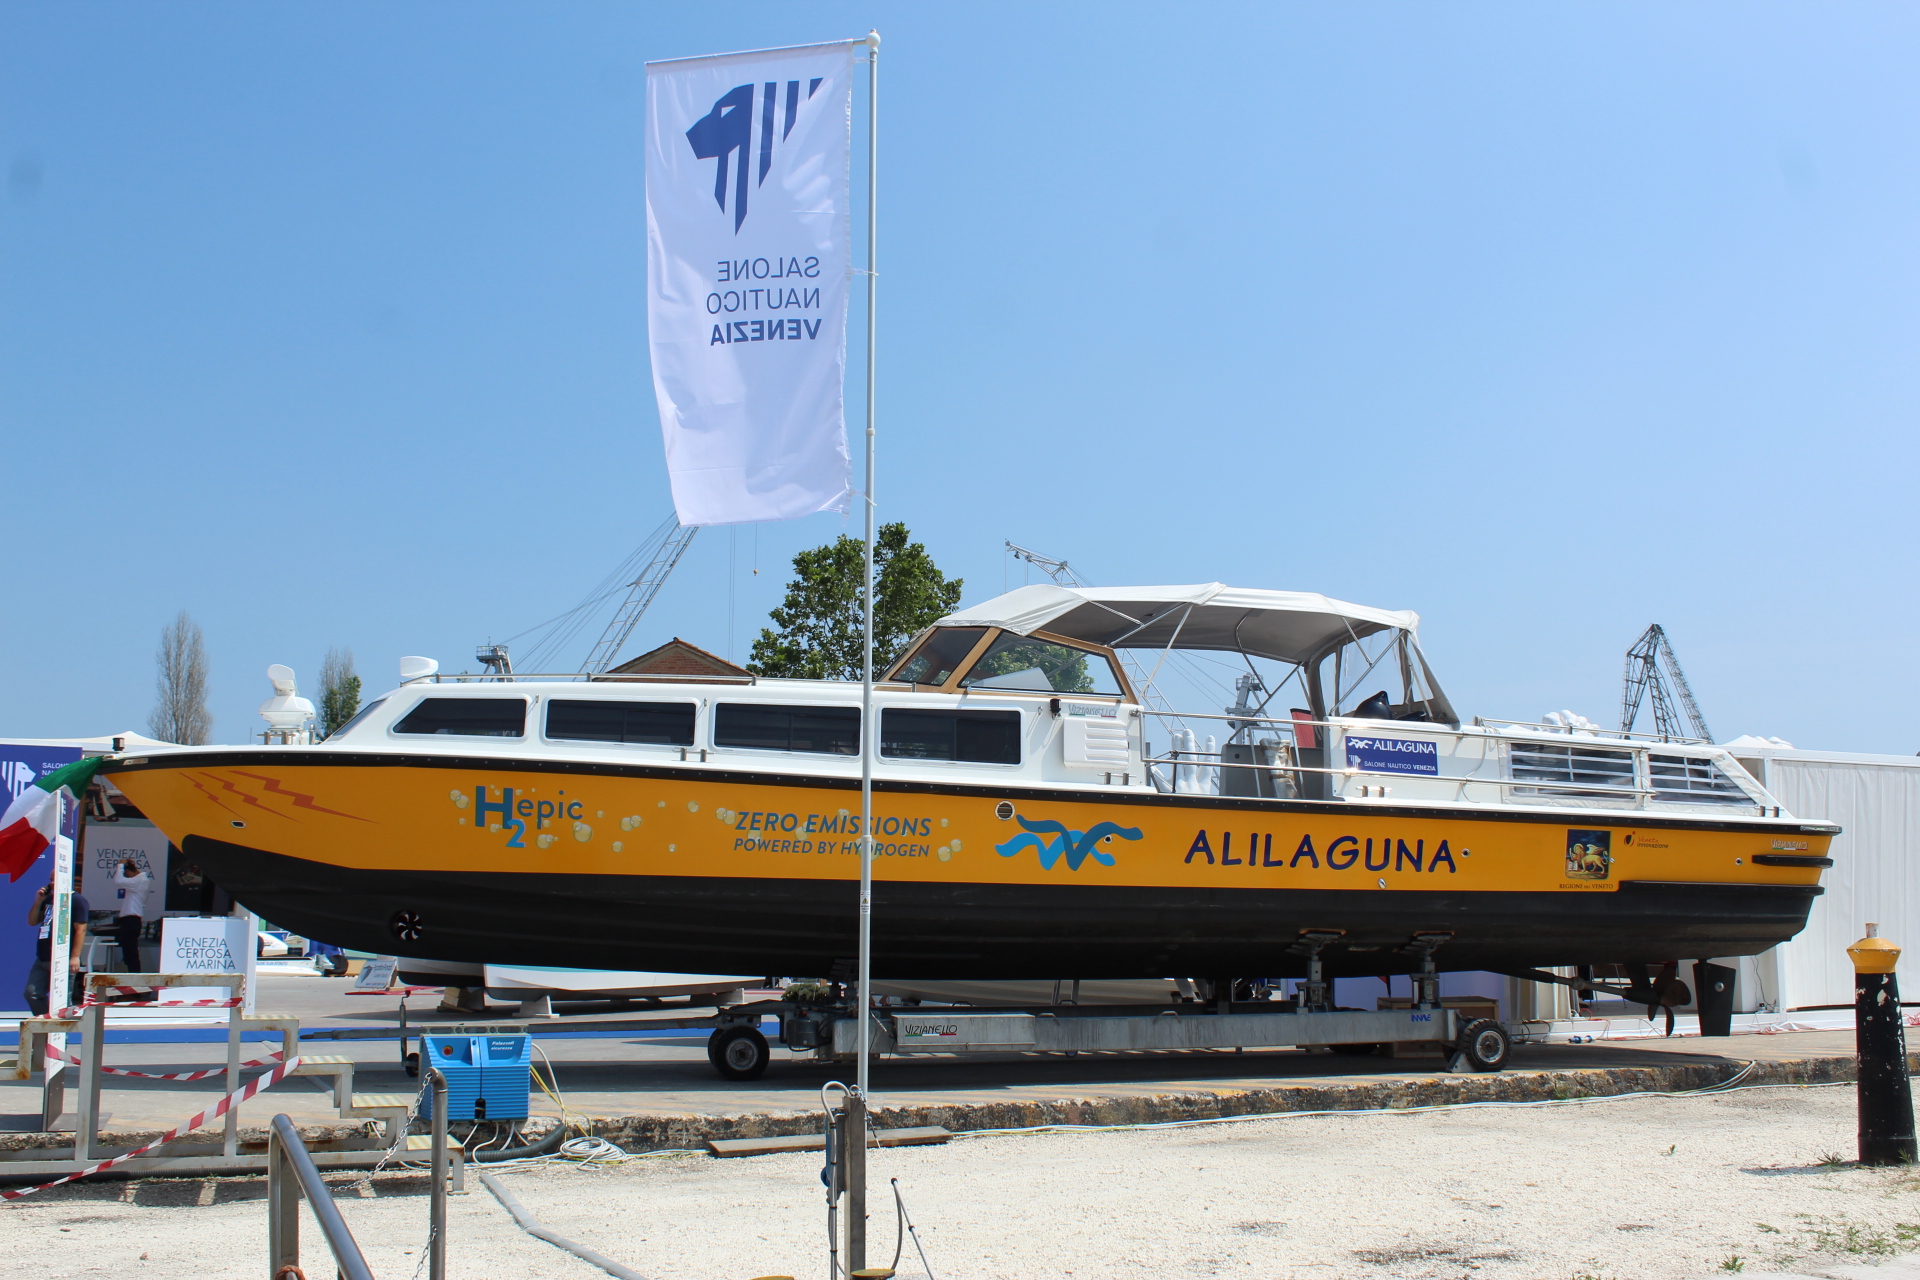 Salone nautico di Venezia, presentata Hepic la prima barca a idrogeno per il trasporto passeggeri in Laguna